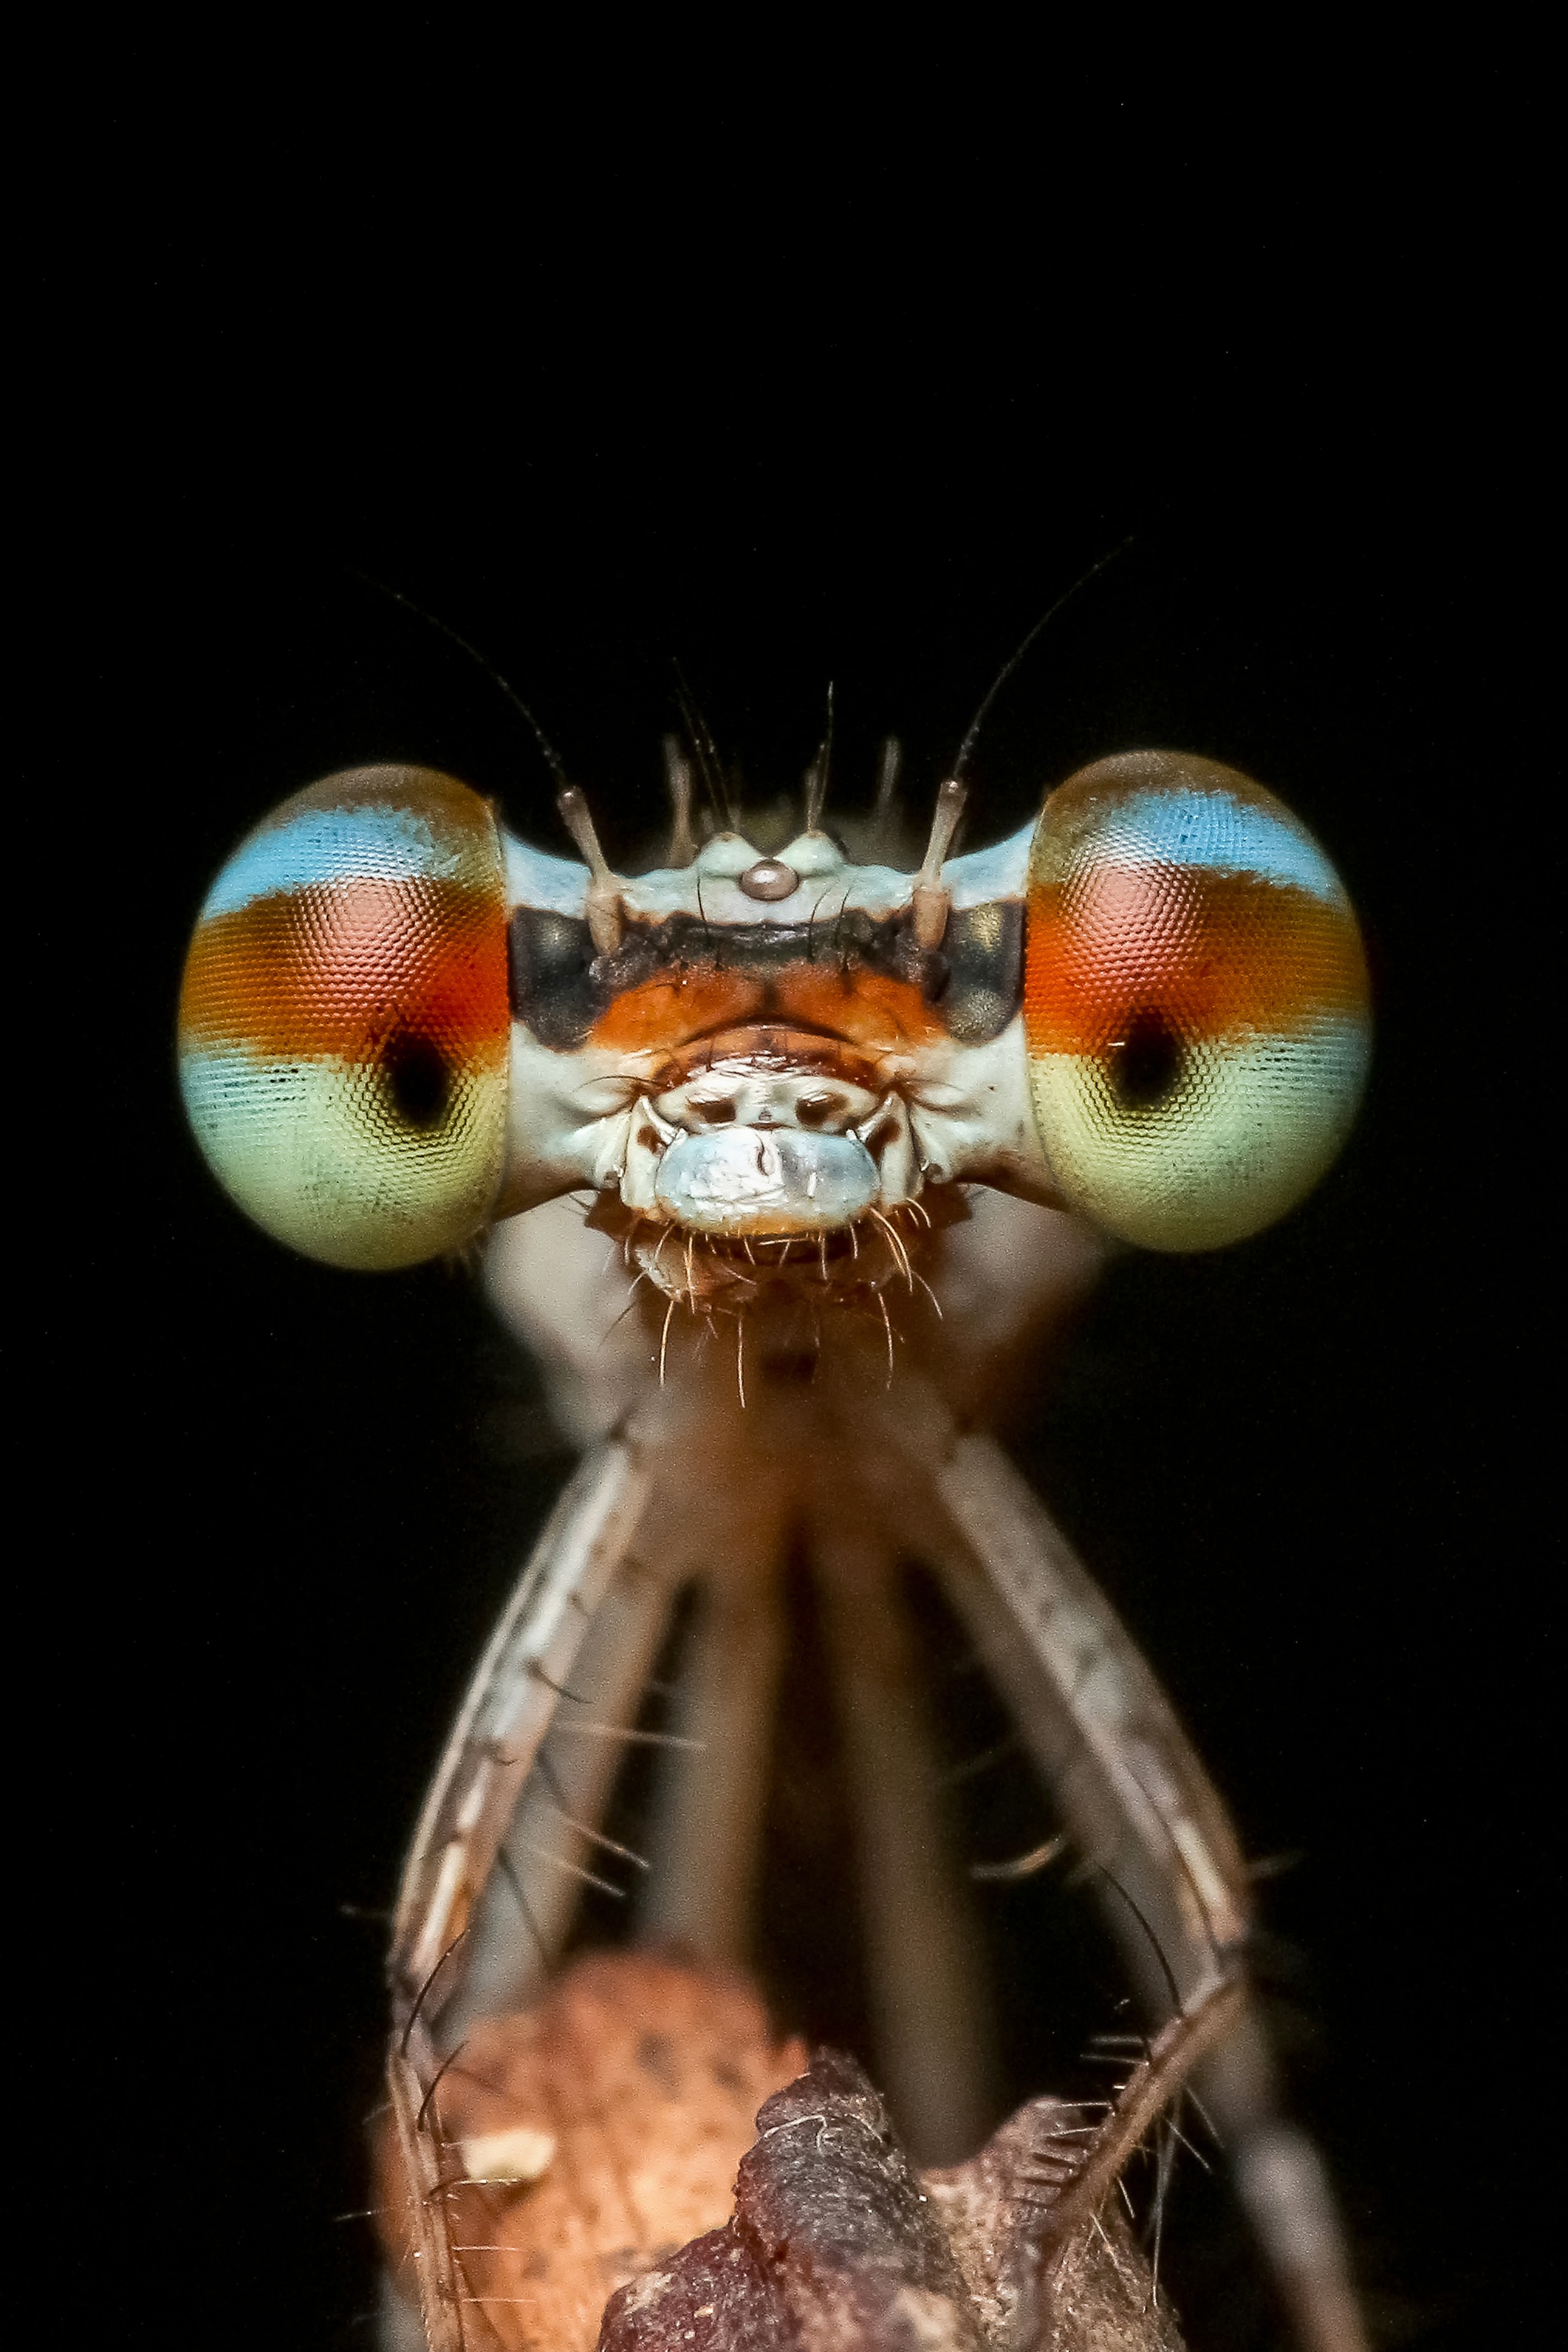 Фото фотографии равнокрылые стрекозы фауна - бесплатные картинки на Fonwall